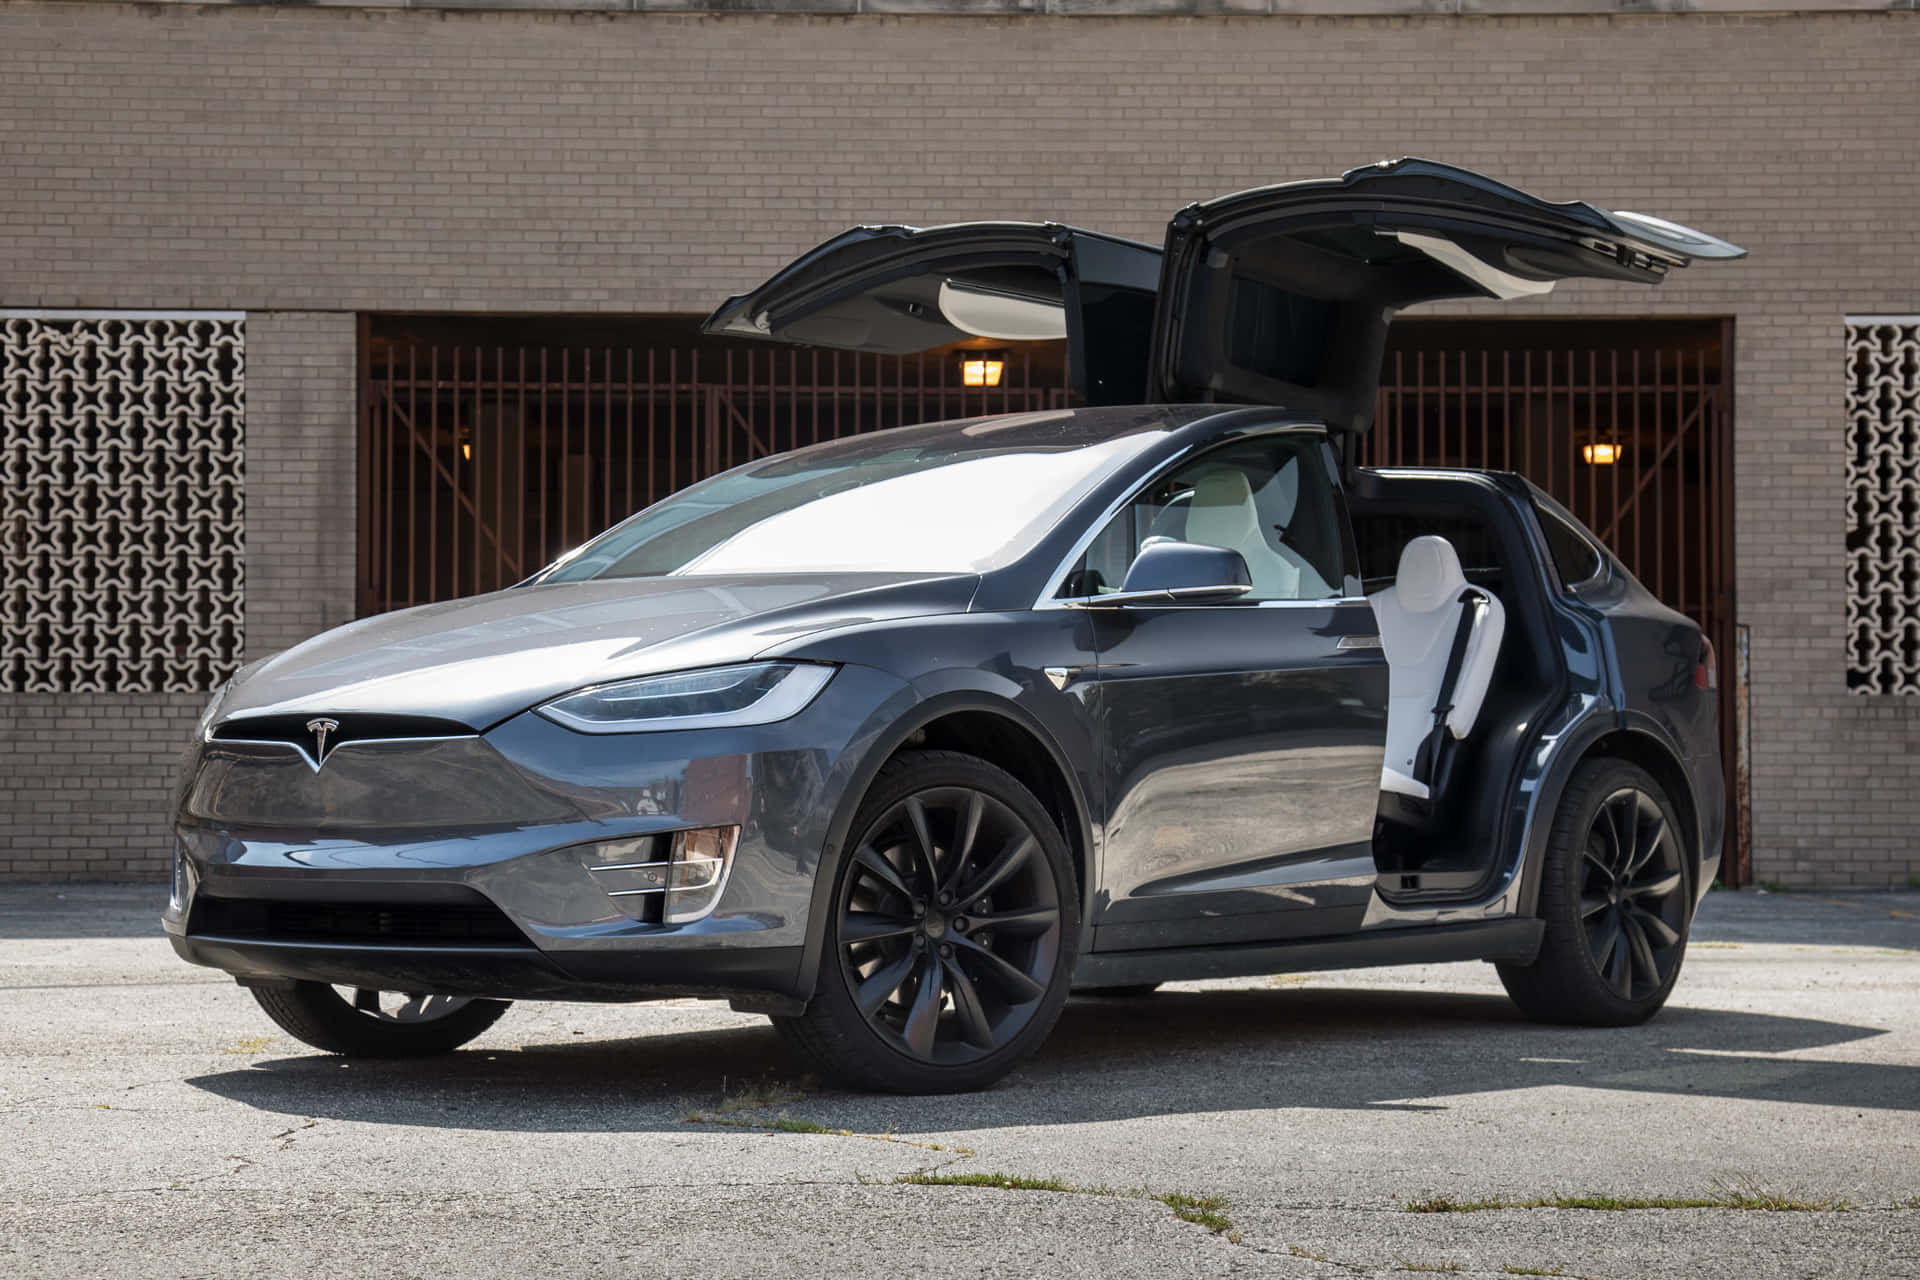 Blankotbillede Af En Skinnende Blå Tesla-bil.